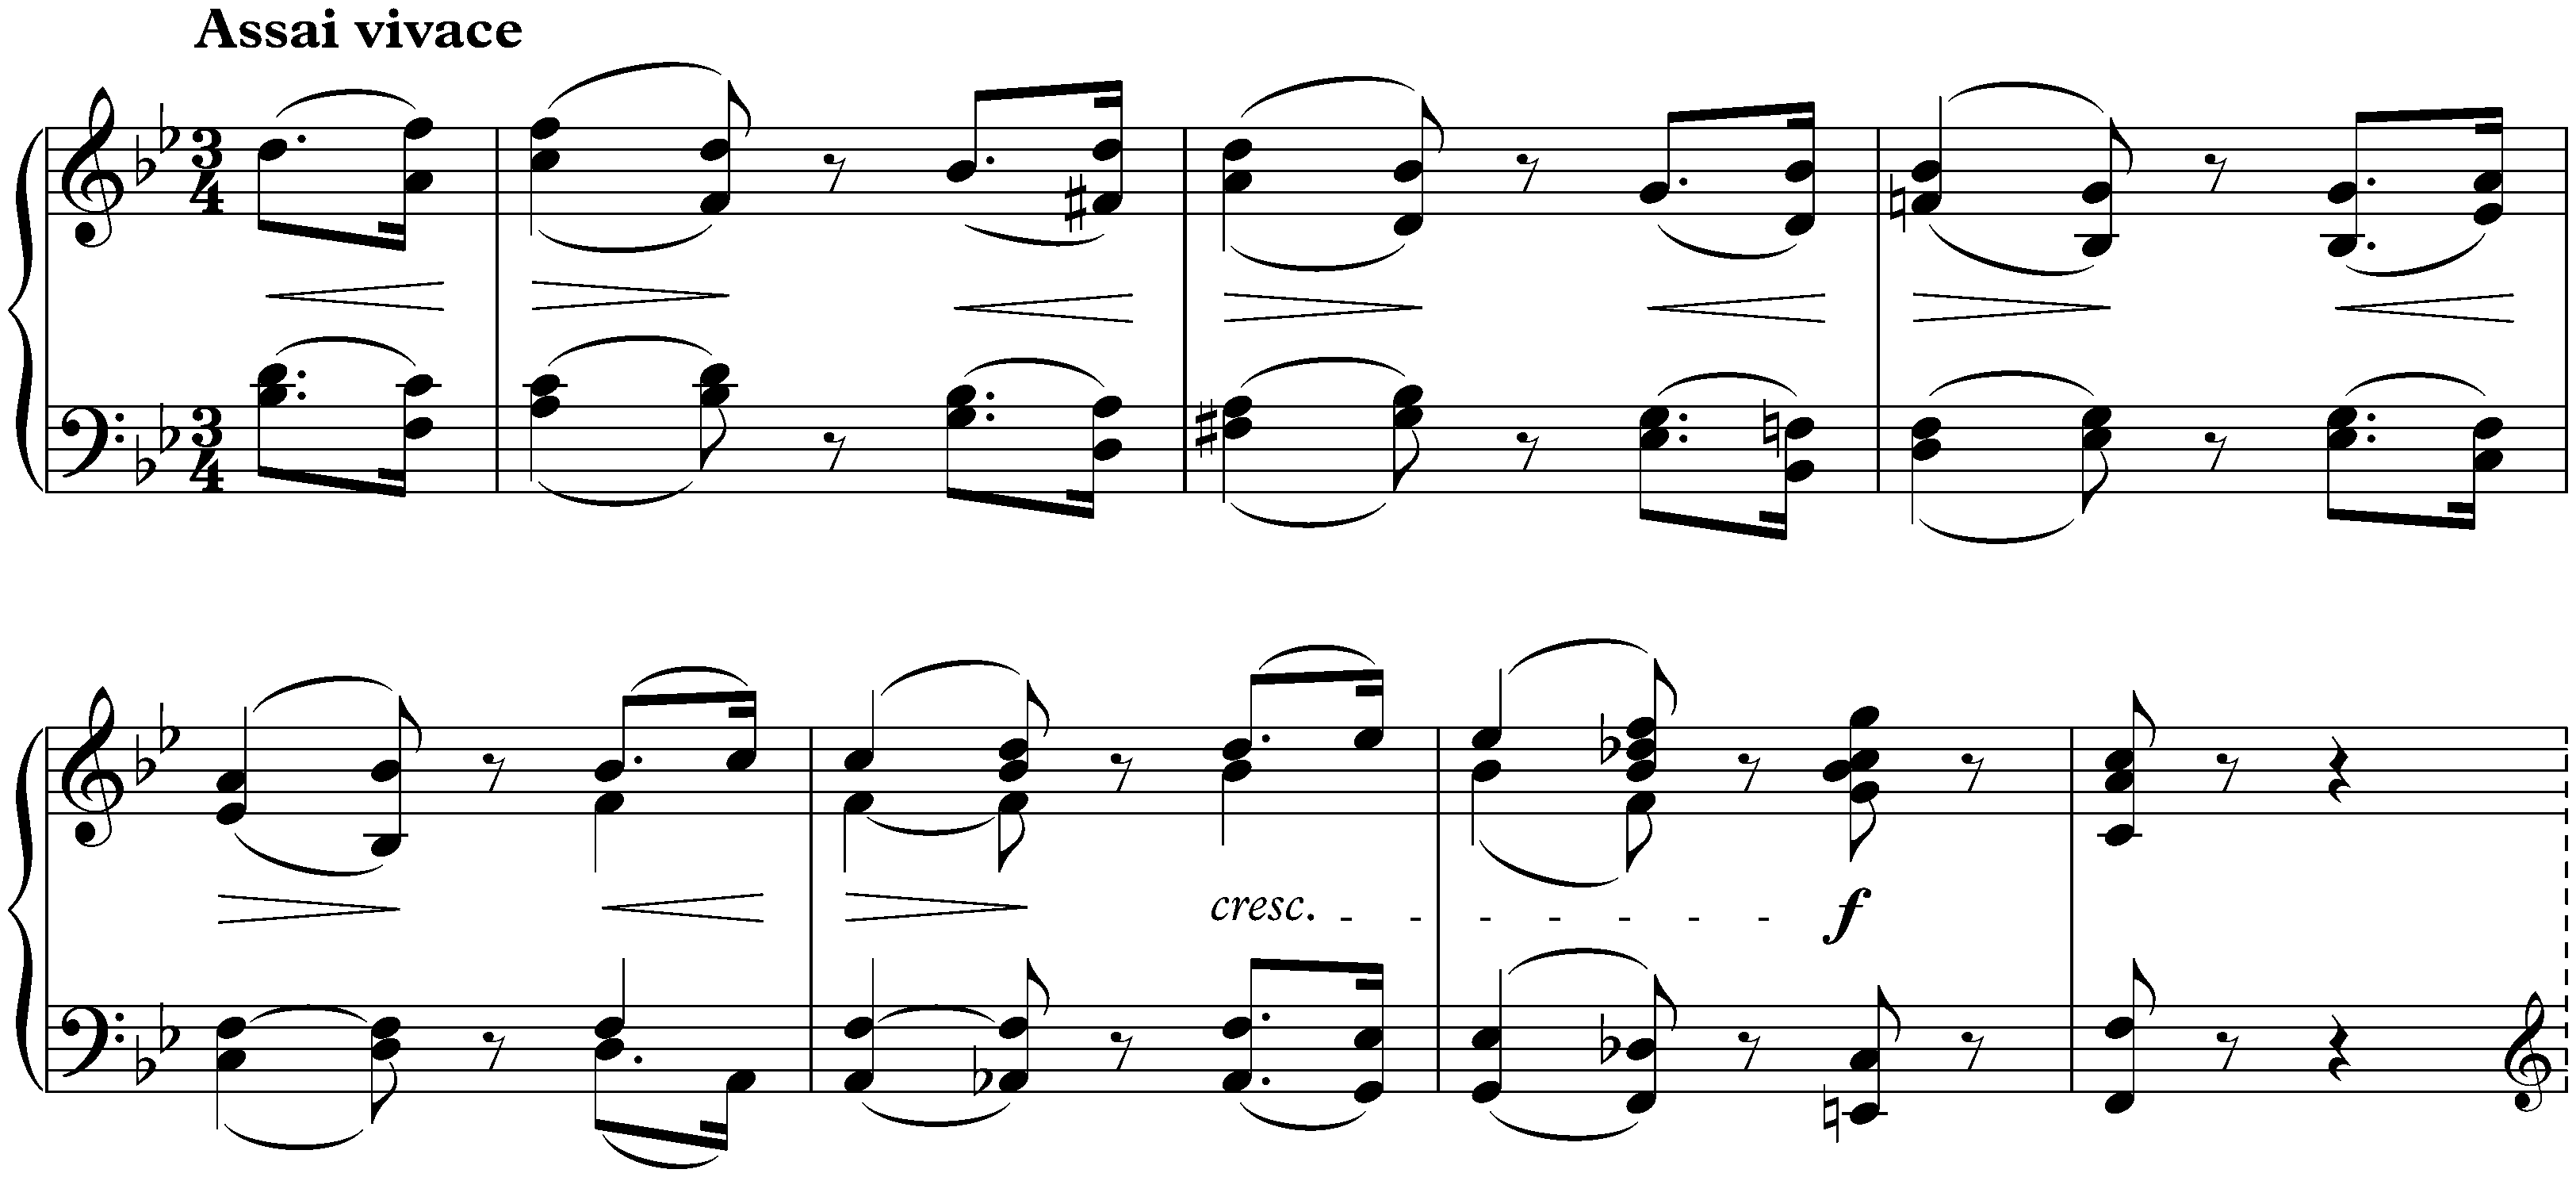 Sonata no. 29 in B-flat major, op. 106 (Hammerklavier); 2. Scherzo: Assai vivace